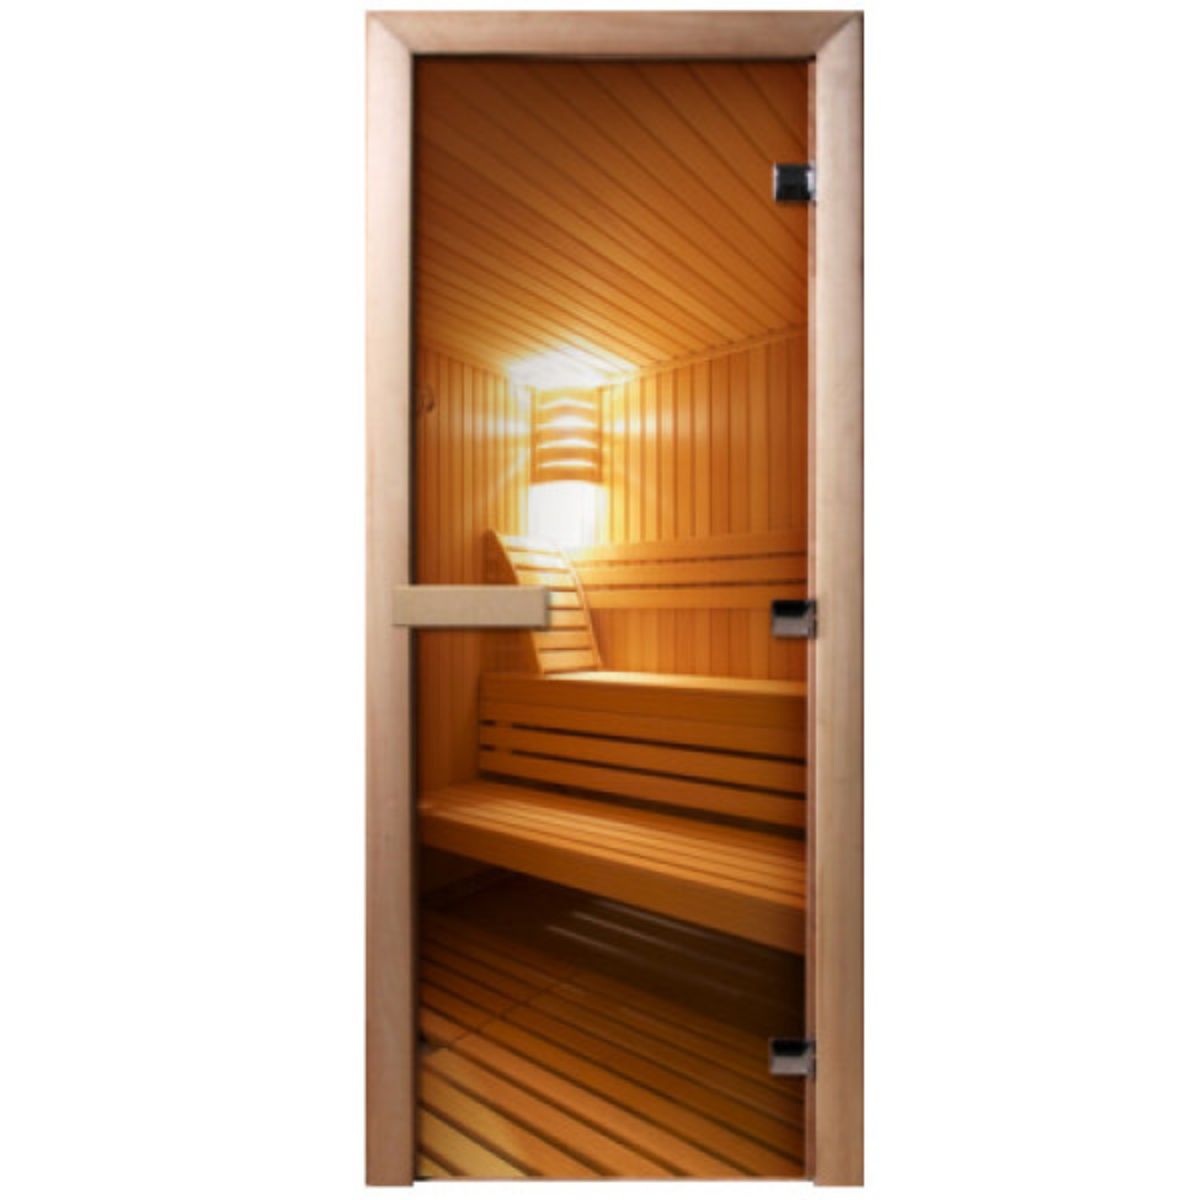 Двери в парную: высота деревянных и стеклянных изделий для бани и парилки, стандартные размеры коробки, отзывы